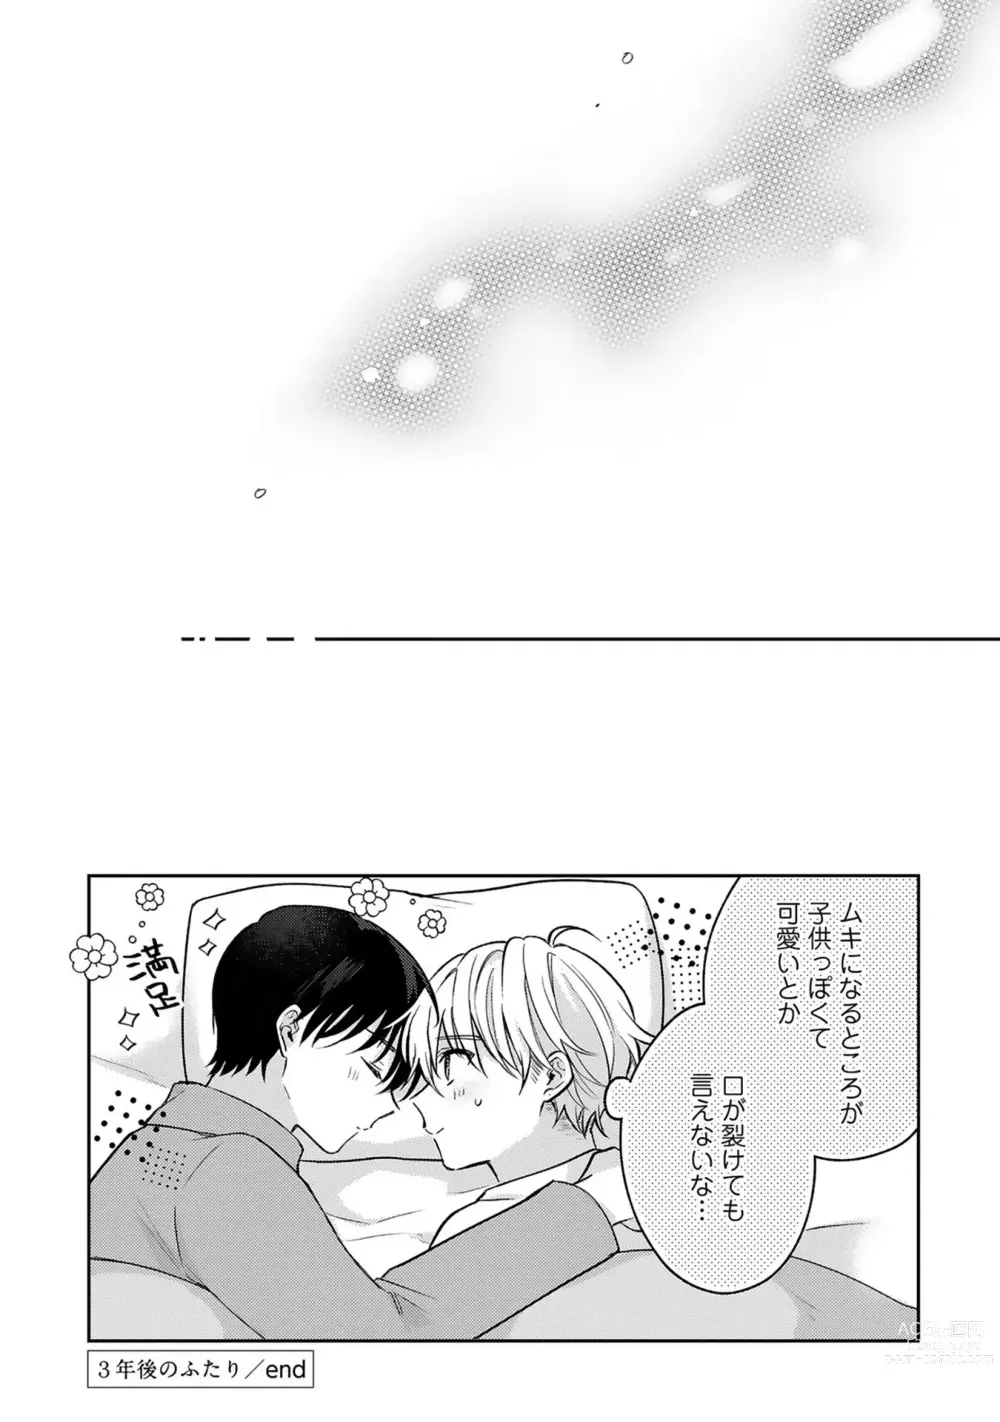 Page 179 of manga Sagashi Mono wa Kimi desu ka